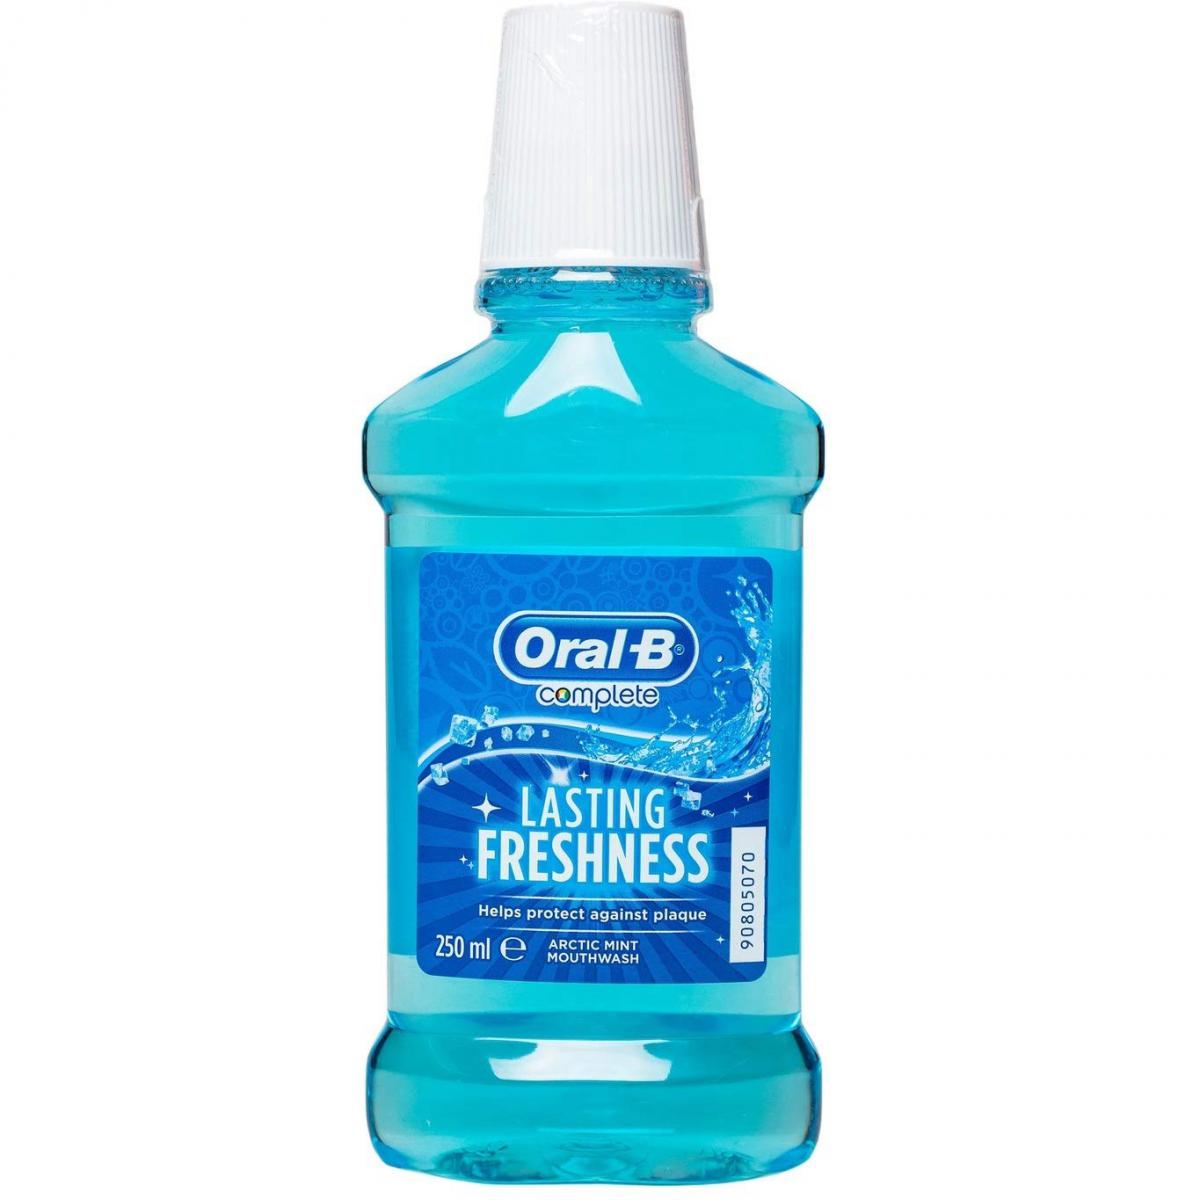 دهان شویه مدل Lasting Freshness - Oral B Complete Lasting Freshness Arctic Mint Mouthwash